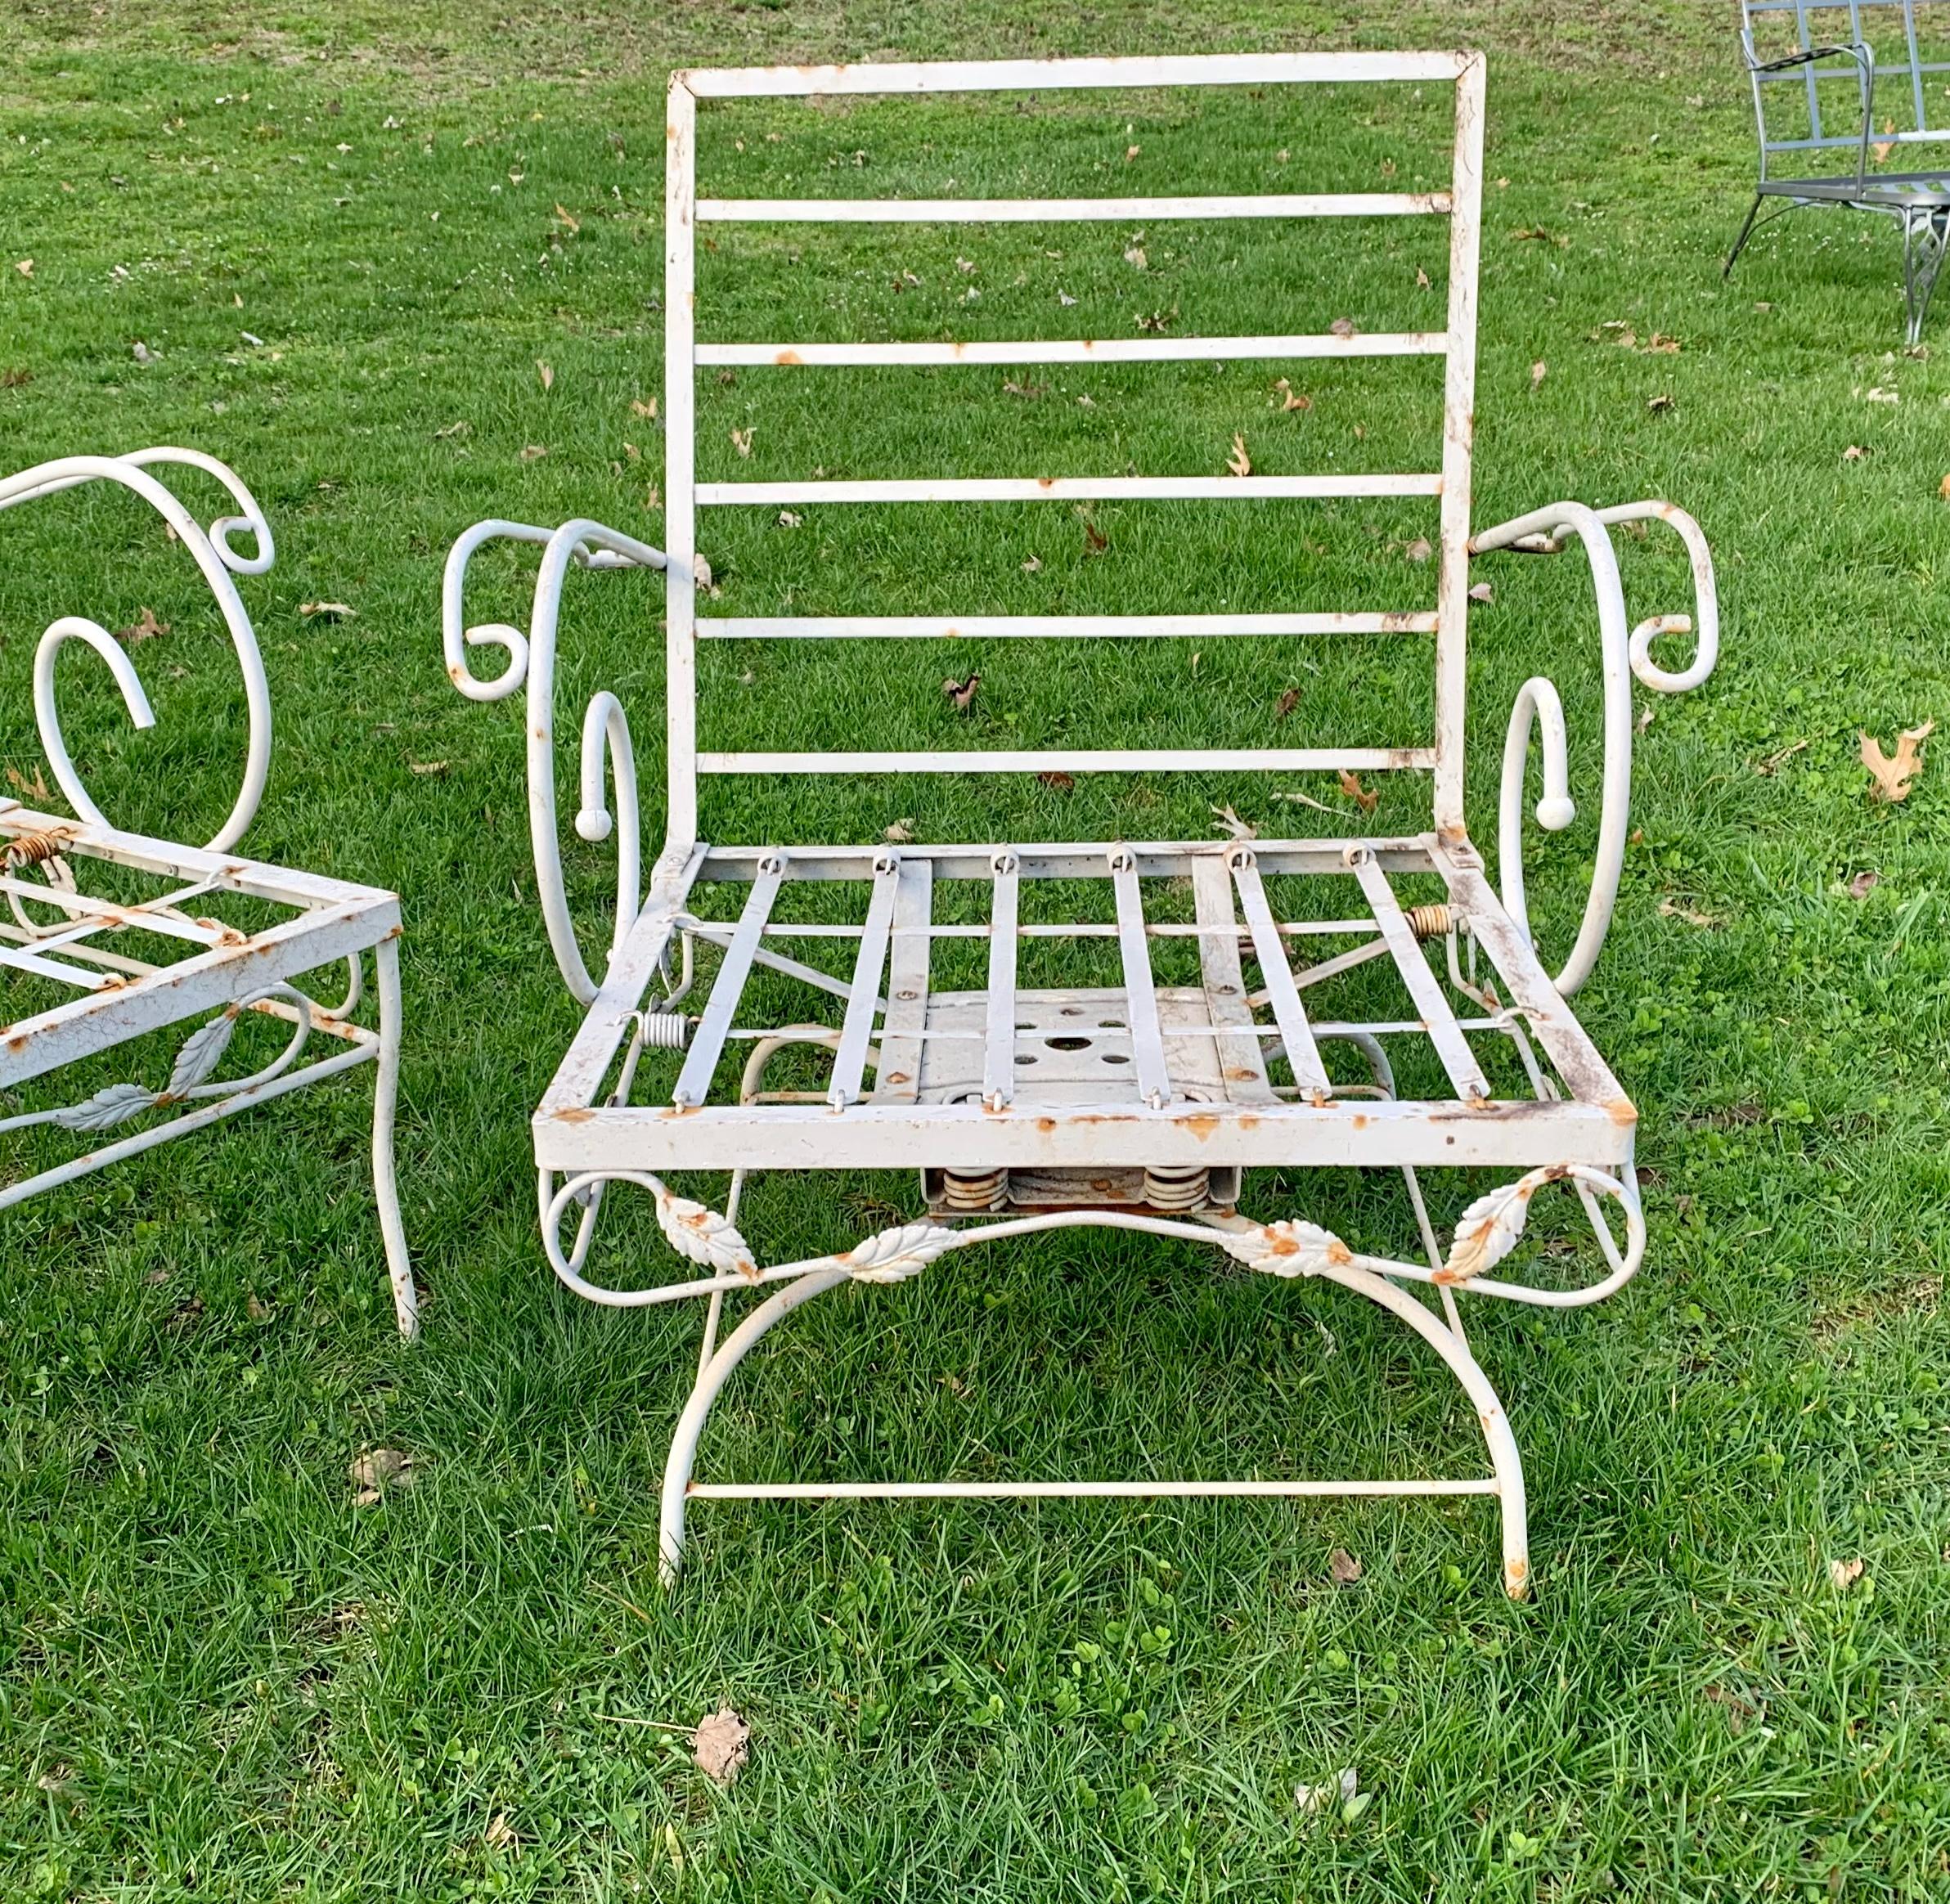 Vintage Wrought Iron Loveseat und Sessel.

Schwere schmiedeeiserne Garnitur mit geschwungenen Armen im Stil von Salterini. Beinhaltet eine schmiedeeiserne Sitzgruppe und einen passenden Sessel mit tiefen Sitzen.

Perfekt für jede Terrasse, jeden